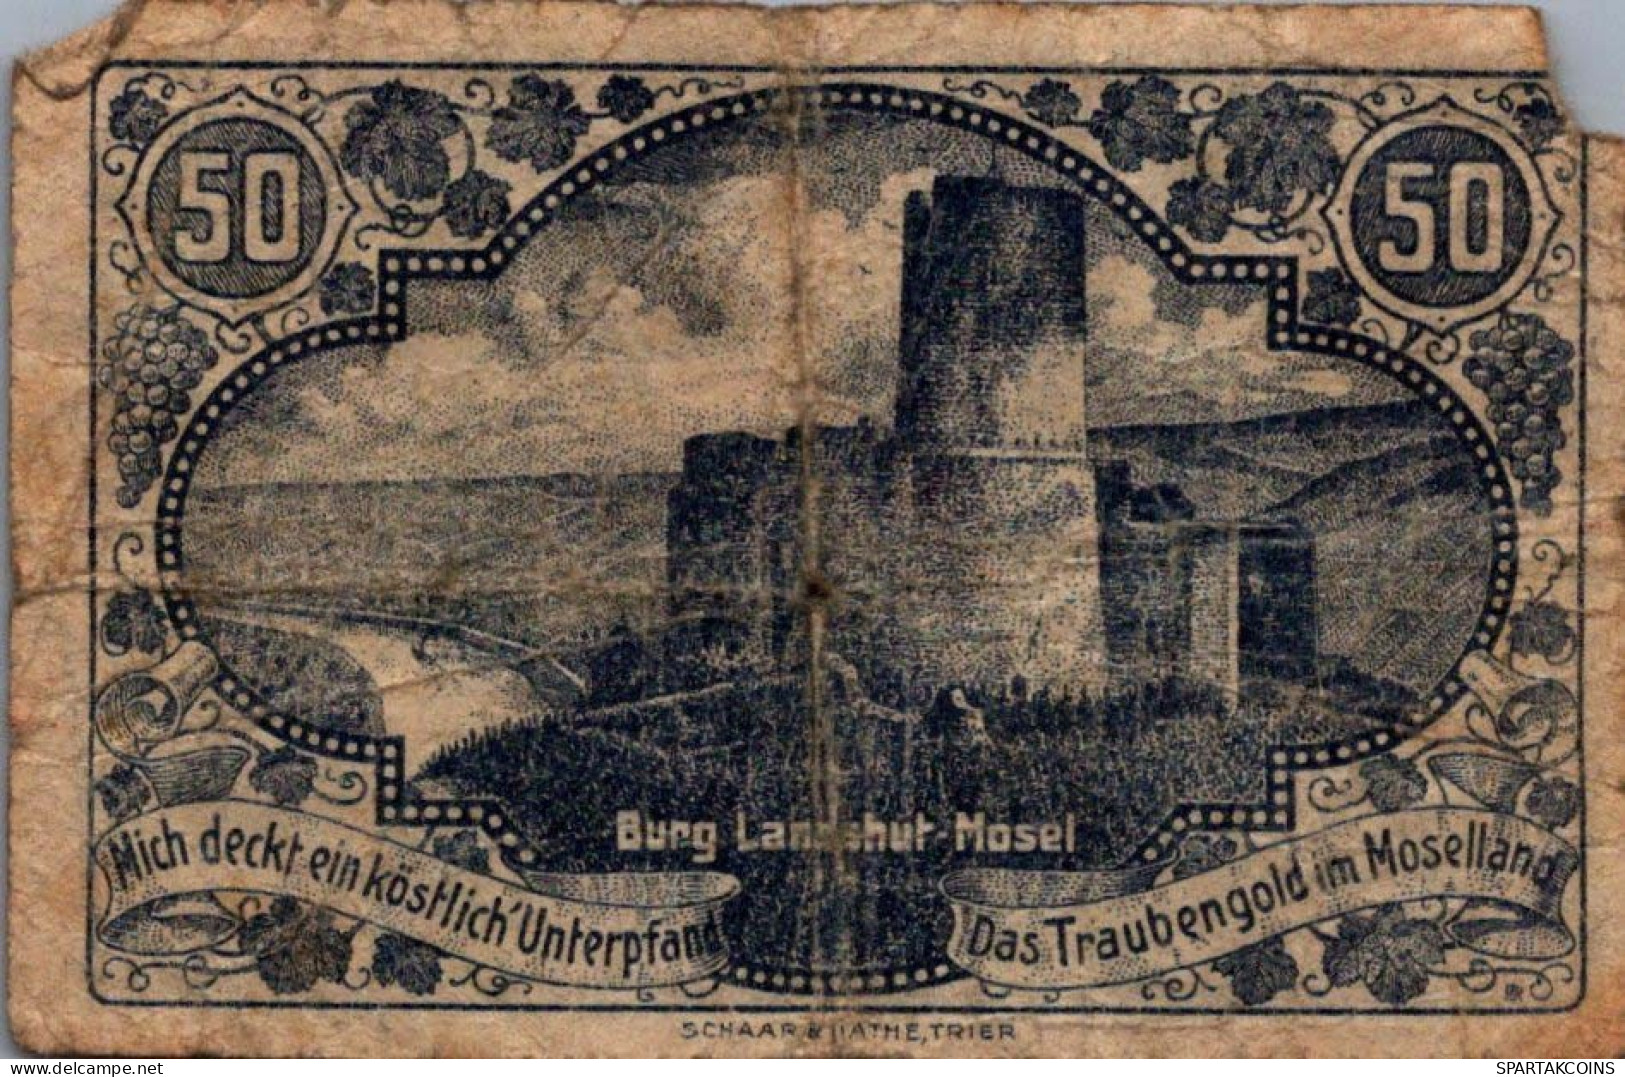 50 PFENNIG 1920 Stadt BERNKASTEL Rhine DEUTSCHLAND Notgeld Banknote #PG456 - [11] Local Banknote Issues